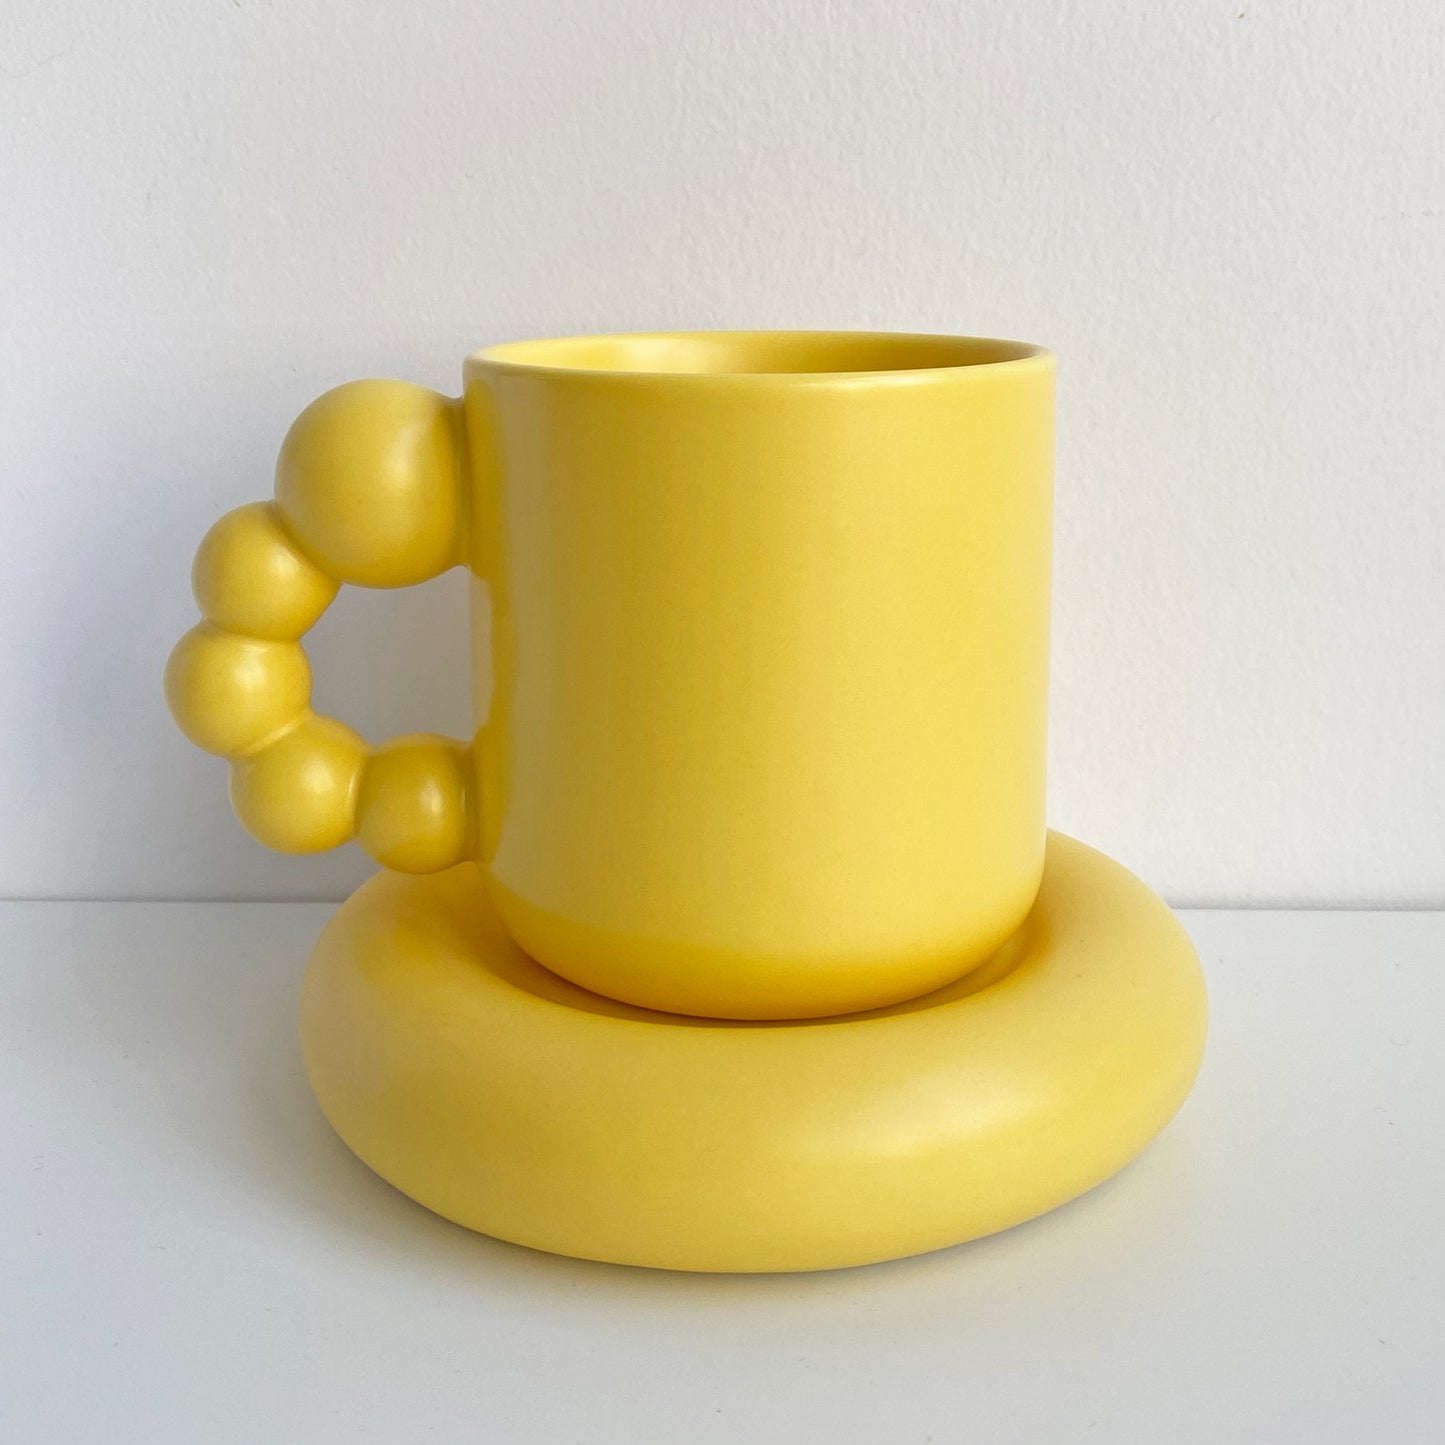 pearl handle ceramic mug in yellow